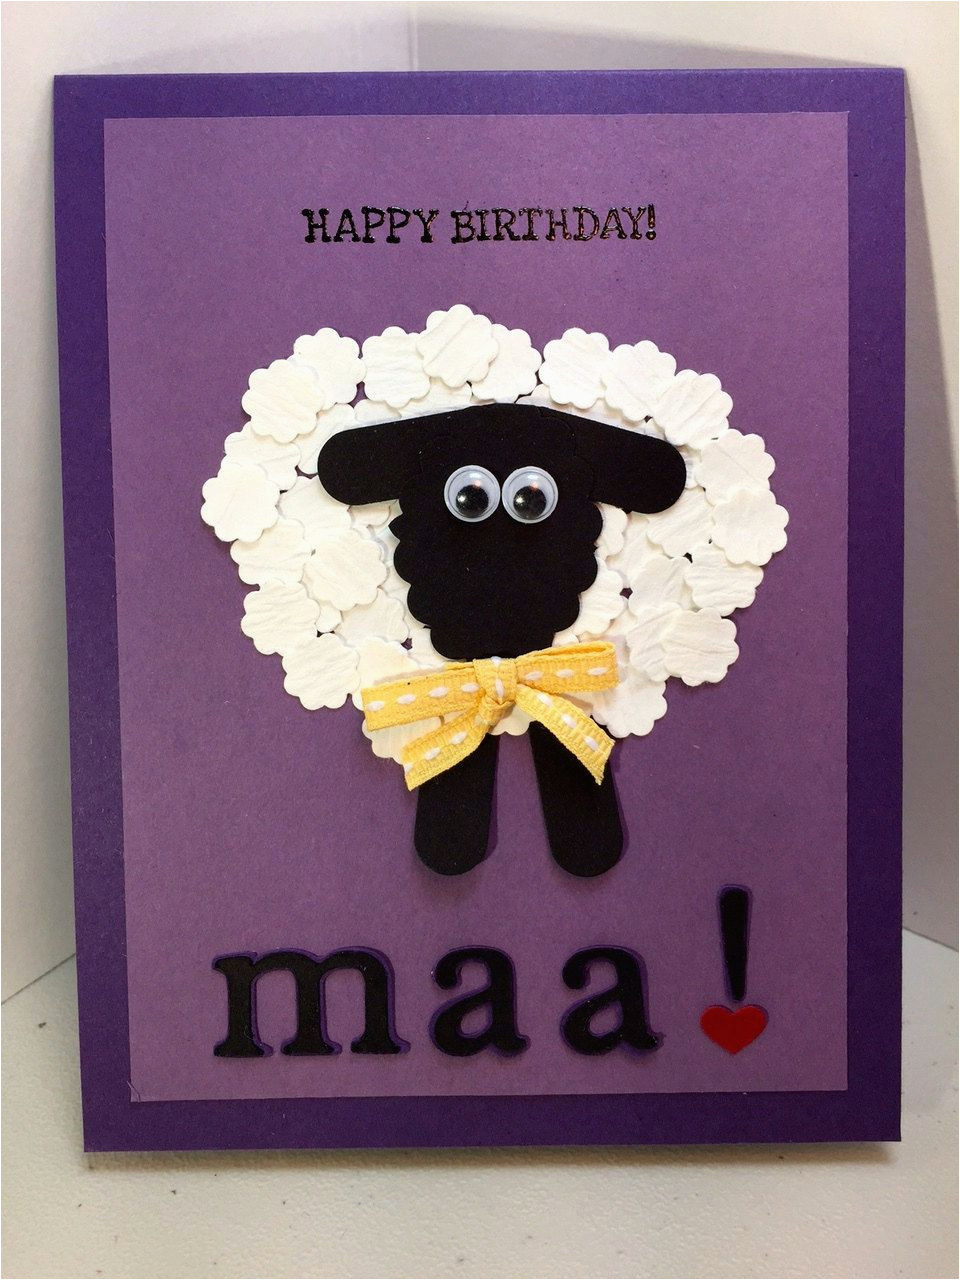 Creative Birthday Card Ideas For Mom Diy Birthday Card Ideas For Mom Happy Birthday Maa Humerous Handmade